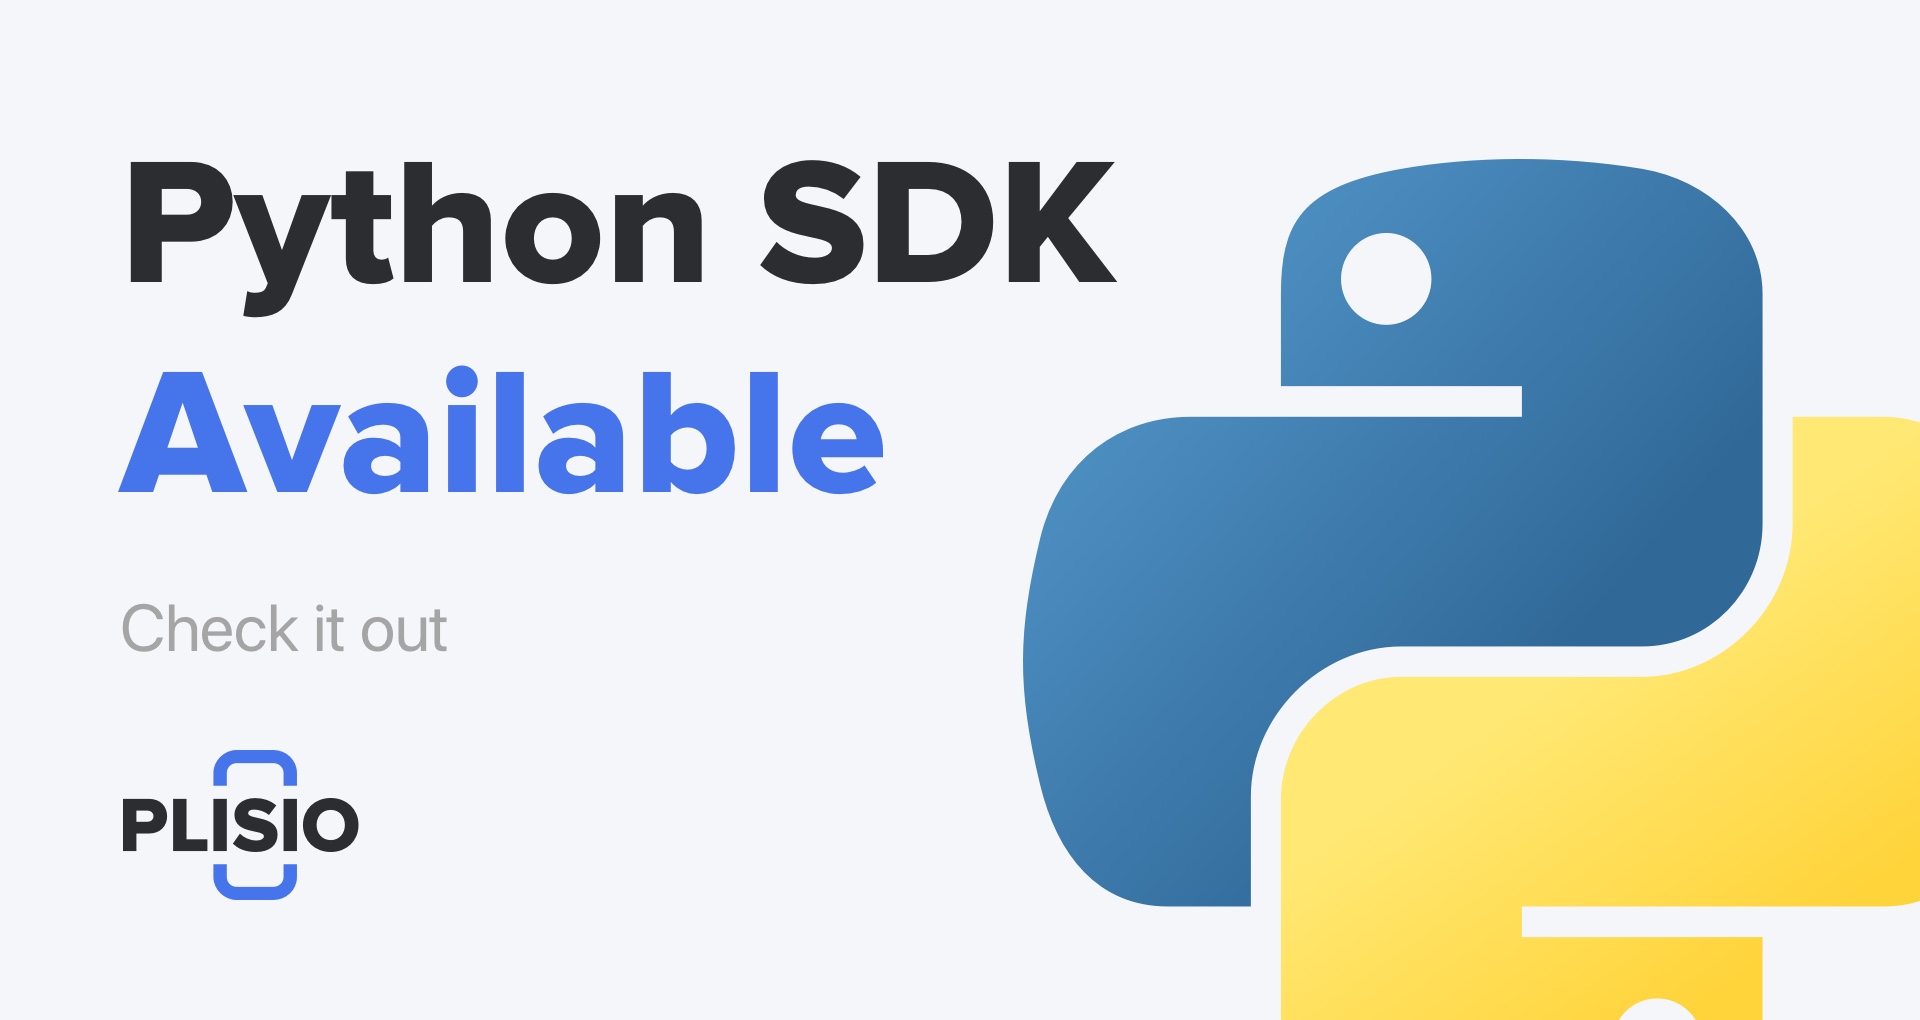 Python SDK ist jetzt verfügbar. Hör zu!